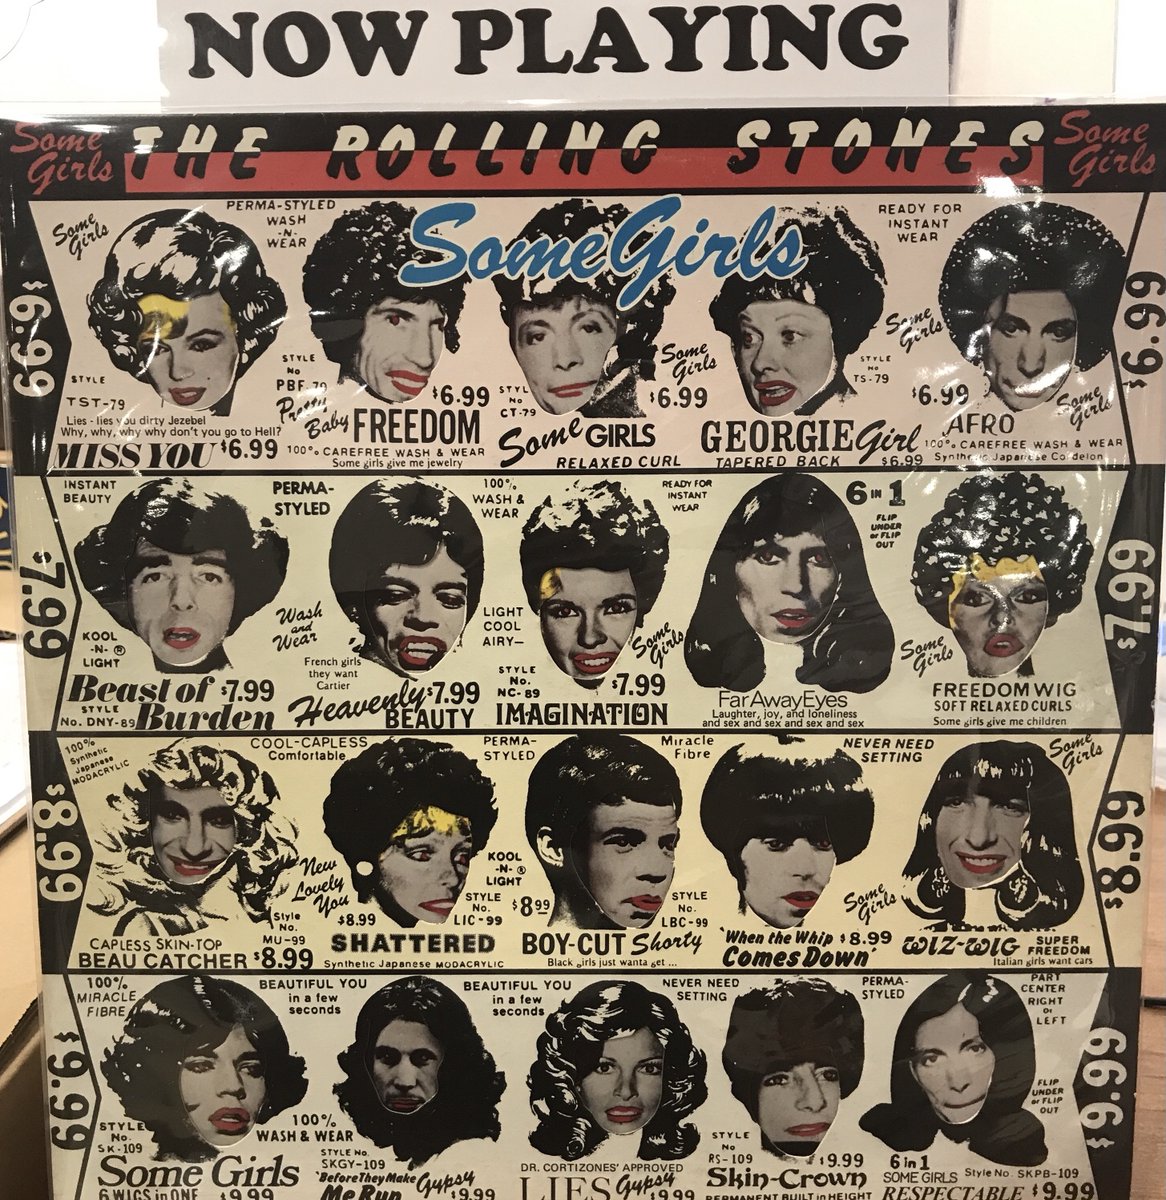 おはようございます！
本日もオープンしました。
今朝のBGMは、The Rolling Stones 『Some Girls』です！
当時全英２位、全米１位を記録した名盤♪
ギミックのきいたジャケのアートワークも目をひきます！
#Osaka #vinylshop #vinylrecords #recordstore #アナログ #レコード #Shinsaibashi 
#vinyl